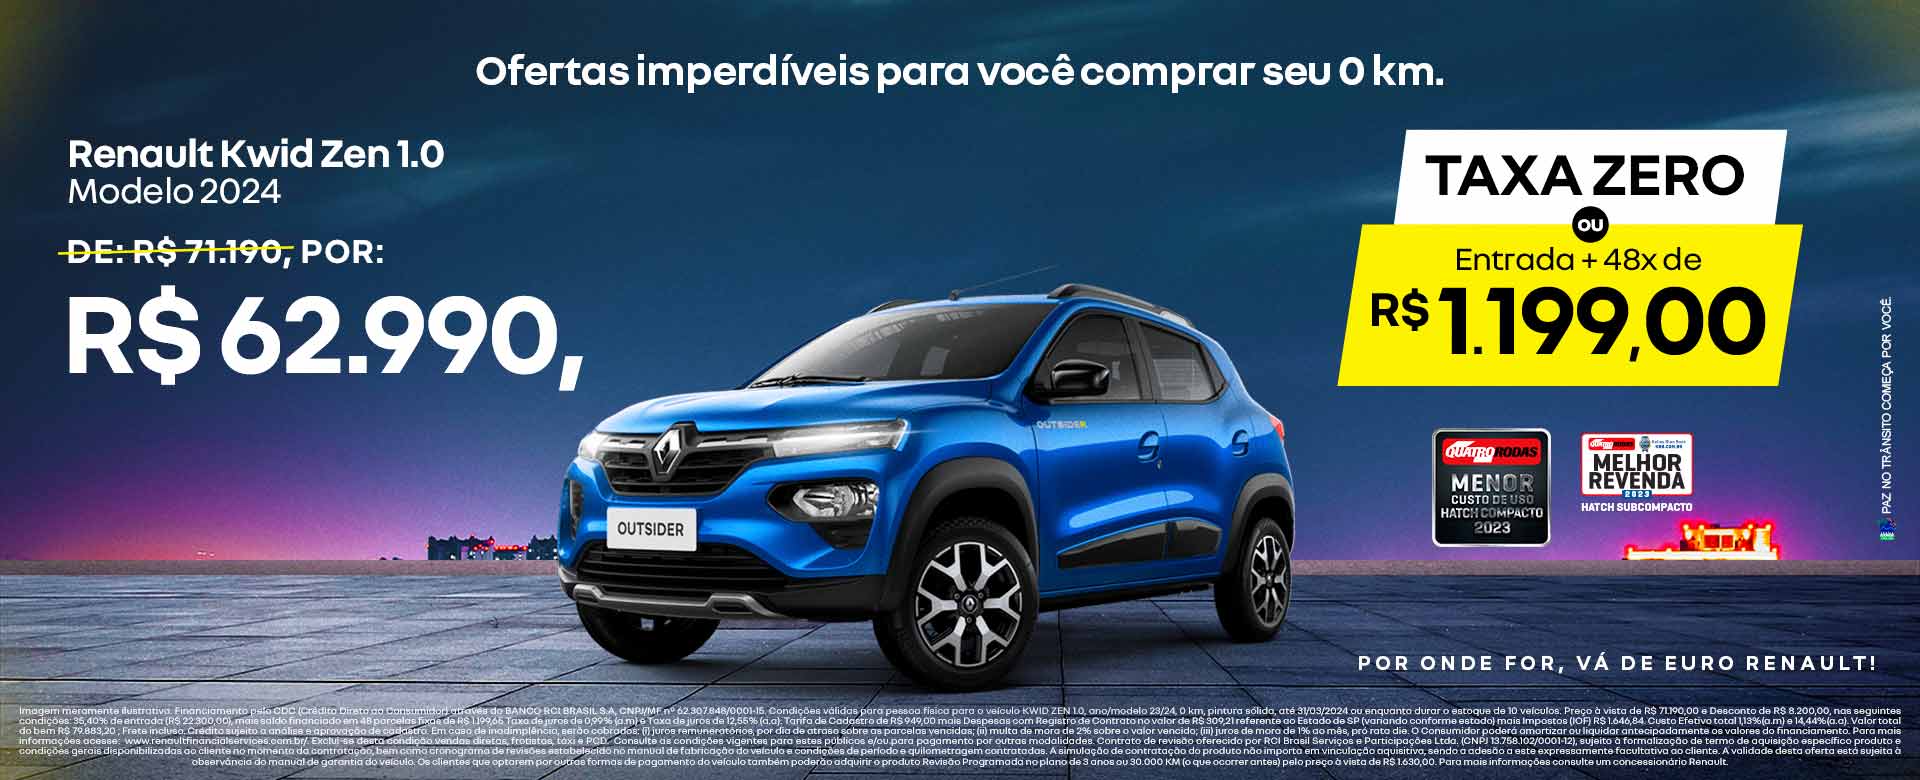 Renault Kwid Zen 1.0 - Taxa zero - Ribeirão Preto 